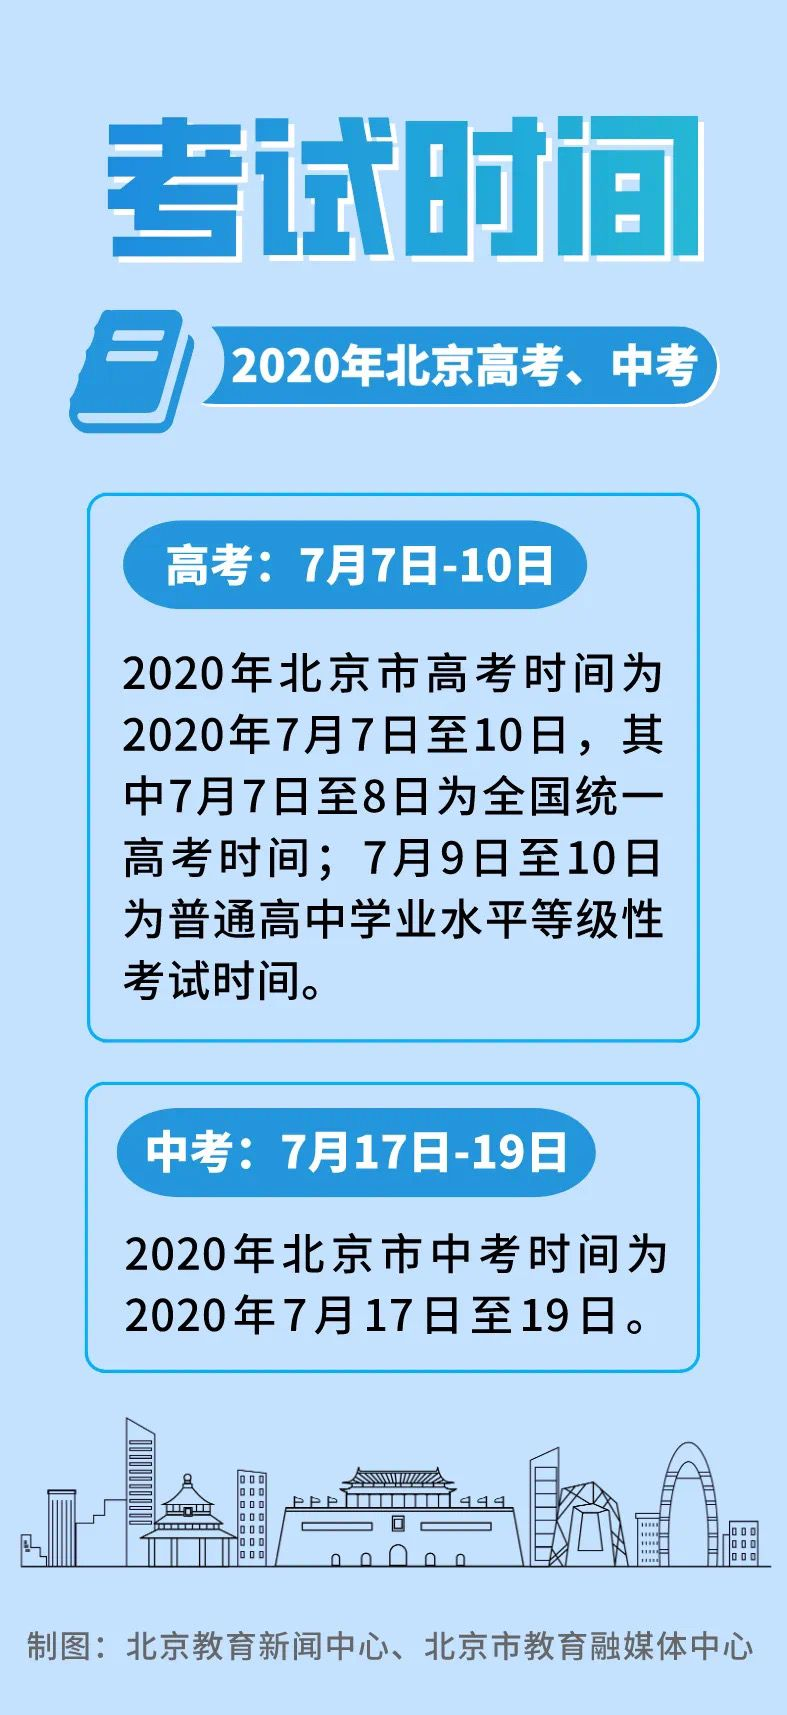 2020年北京中考、高考时间安排